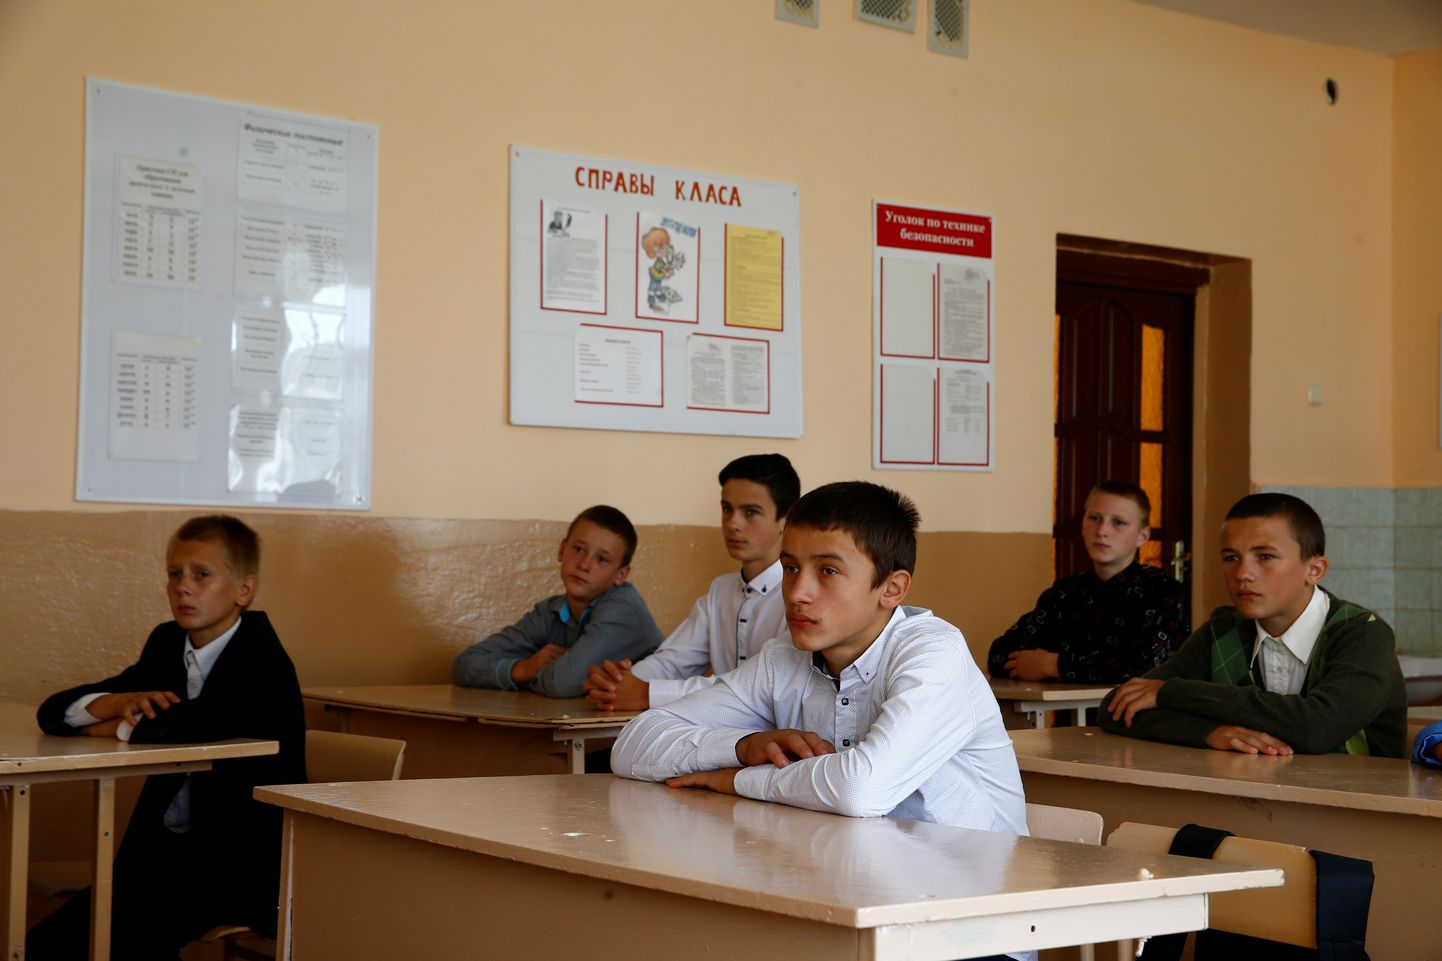 Venemaa ja Valgevene ametnikud jõudsid üksmeelele, et õige ajalookäsitlus ja ideoloogia algab koolist. Pildil Valgevene koolipoisid Sudkovo külas.